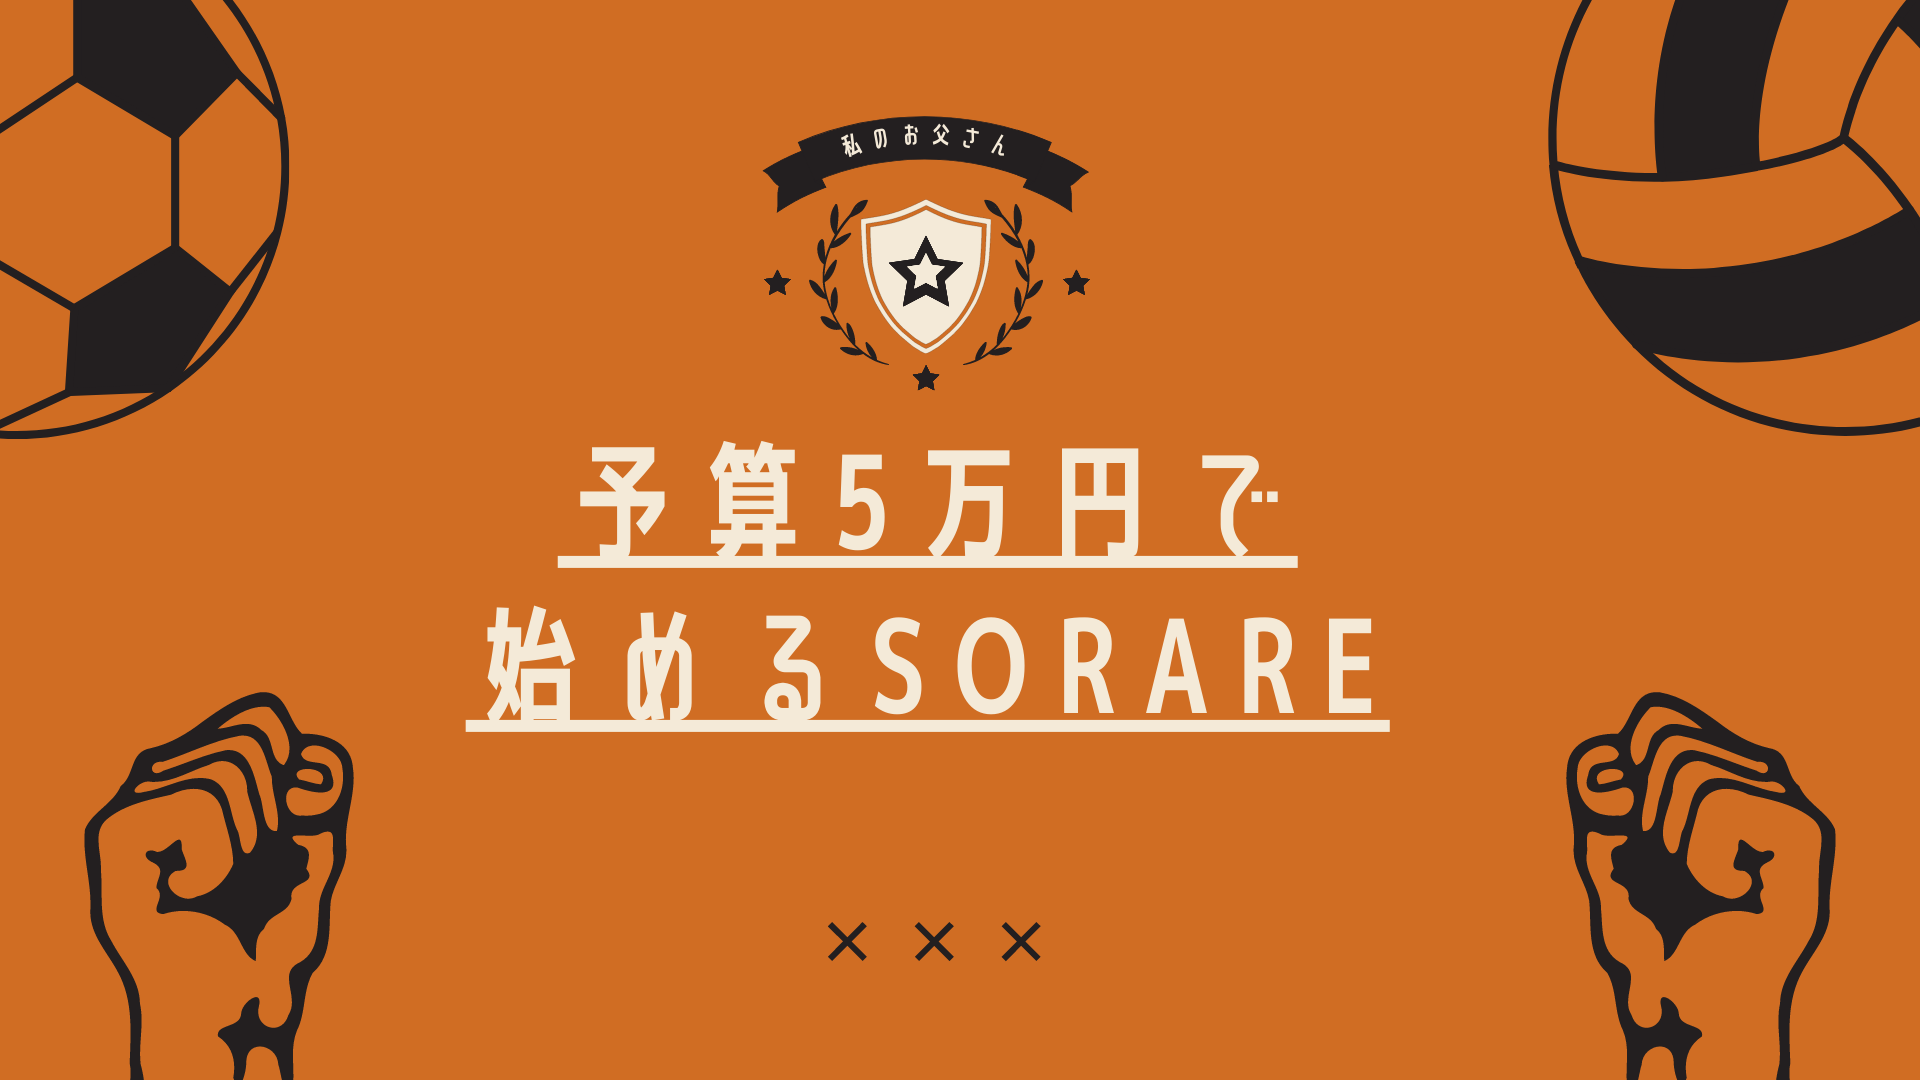 Sorare攻略 予算5万円でsorareを始めるための戦略 ぶたねこドットコム